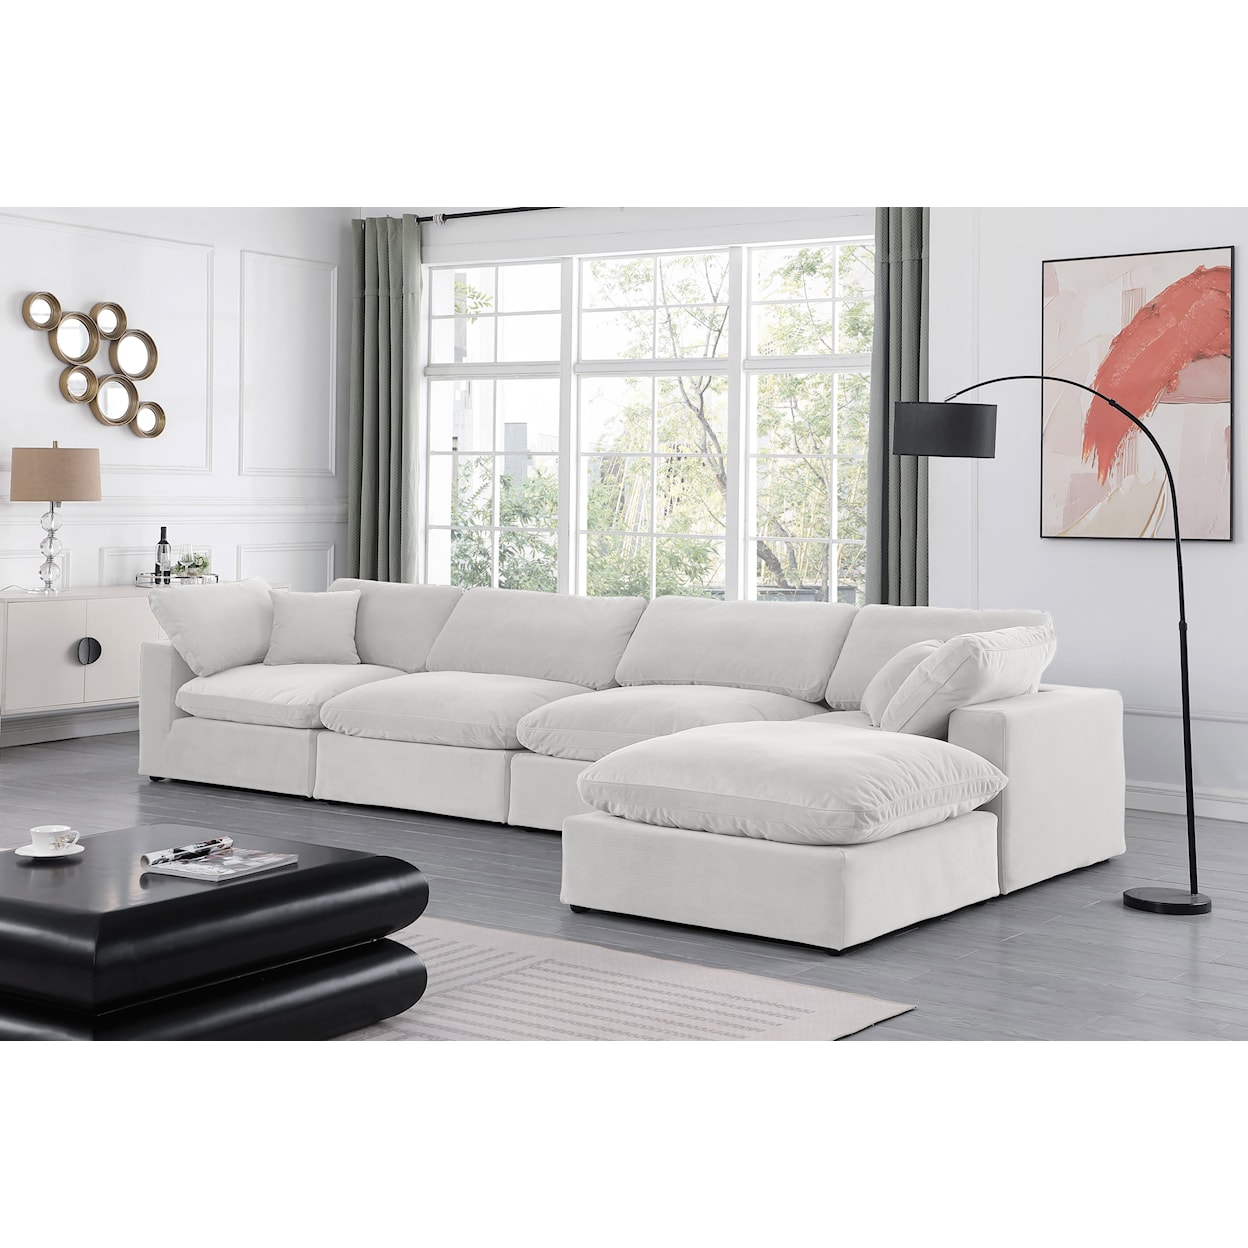 Meridian Furniture Comfy Modular Sectional